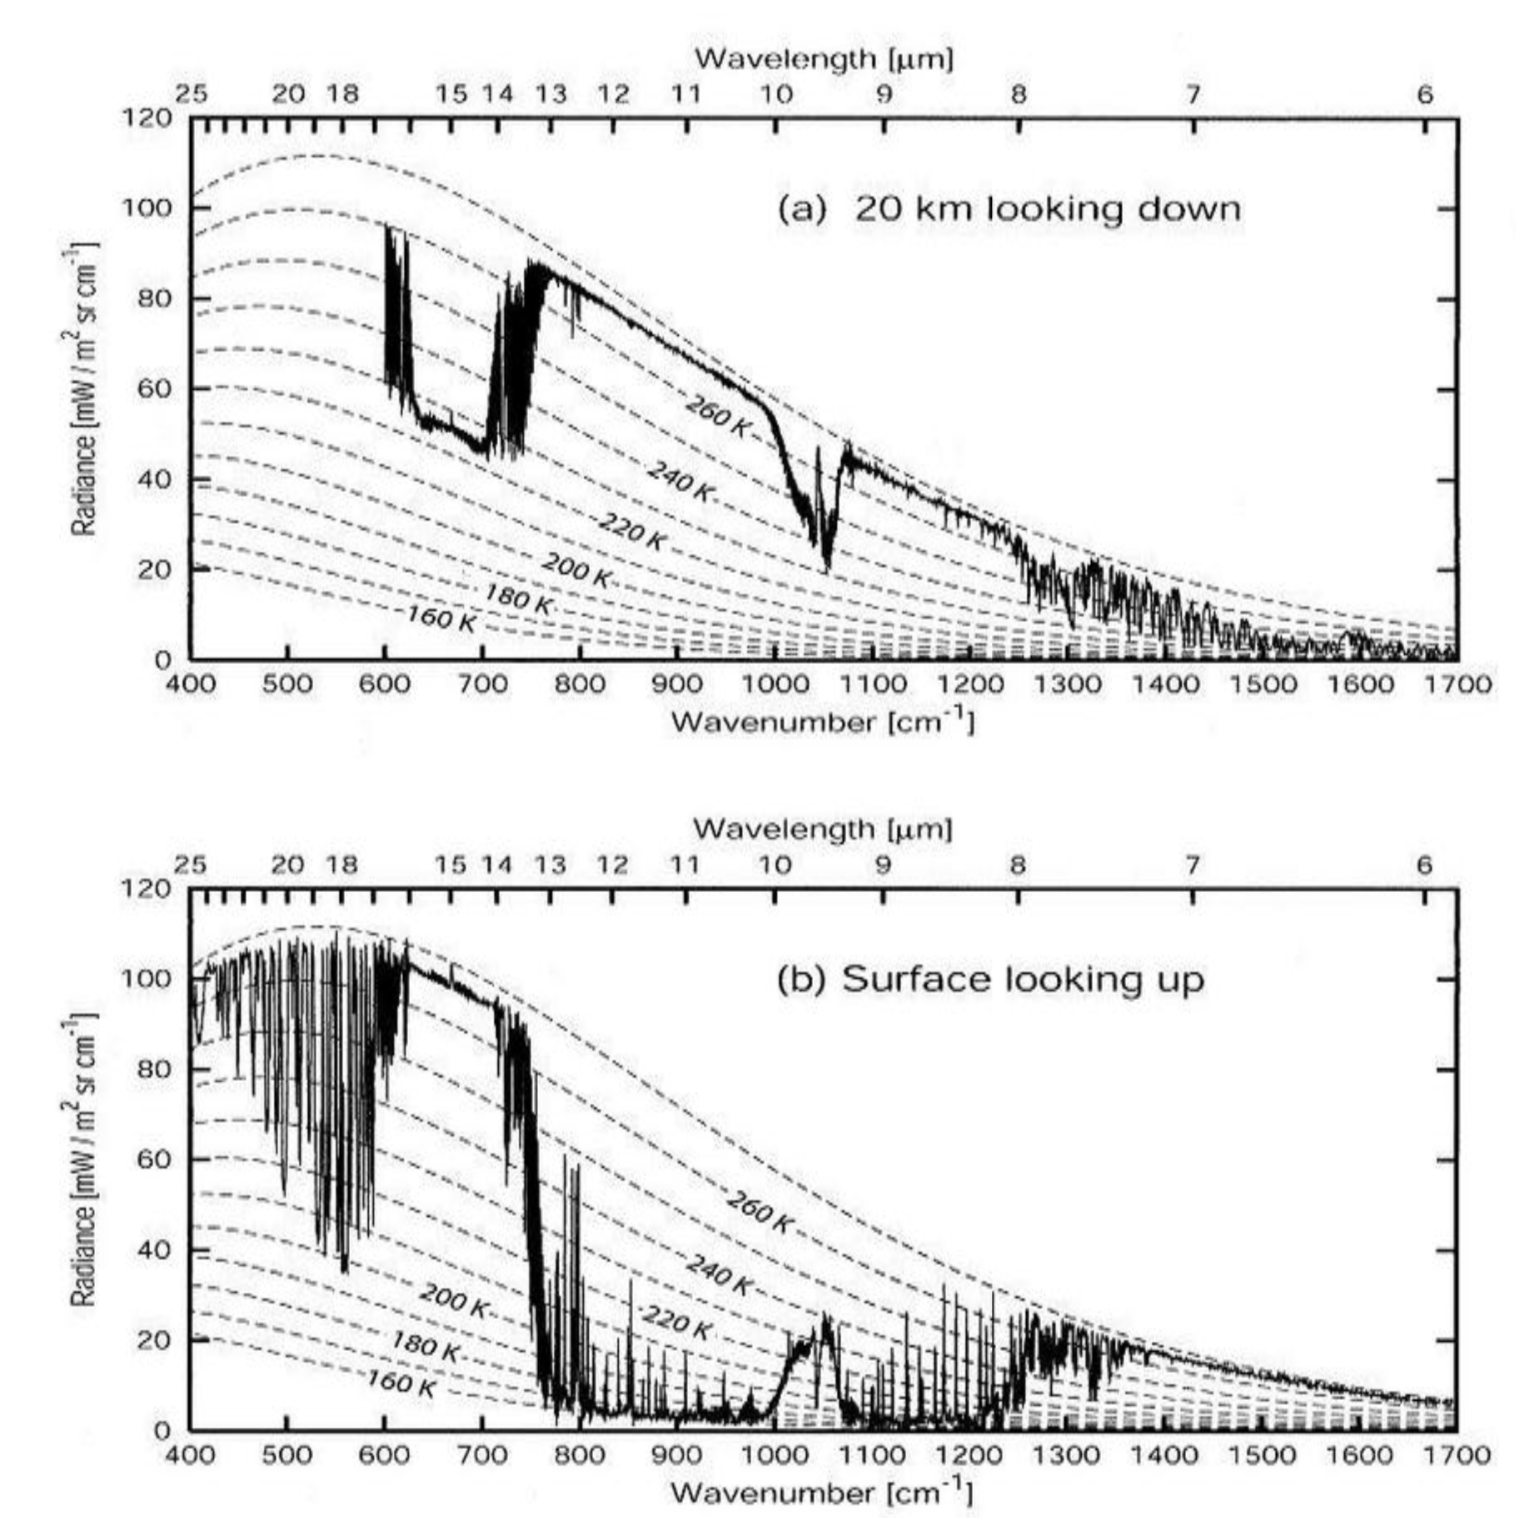 Mesures concomitantes du spectre d'émission infrarouge de l'atmosphère sans nuage (a) depuis 20 km d'altitude vers le bas au-dessus de la calotte glaciaire arctique et (b) depuis la surface en regardant vers le haut